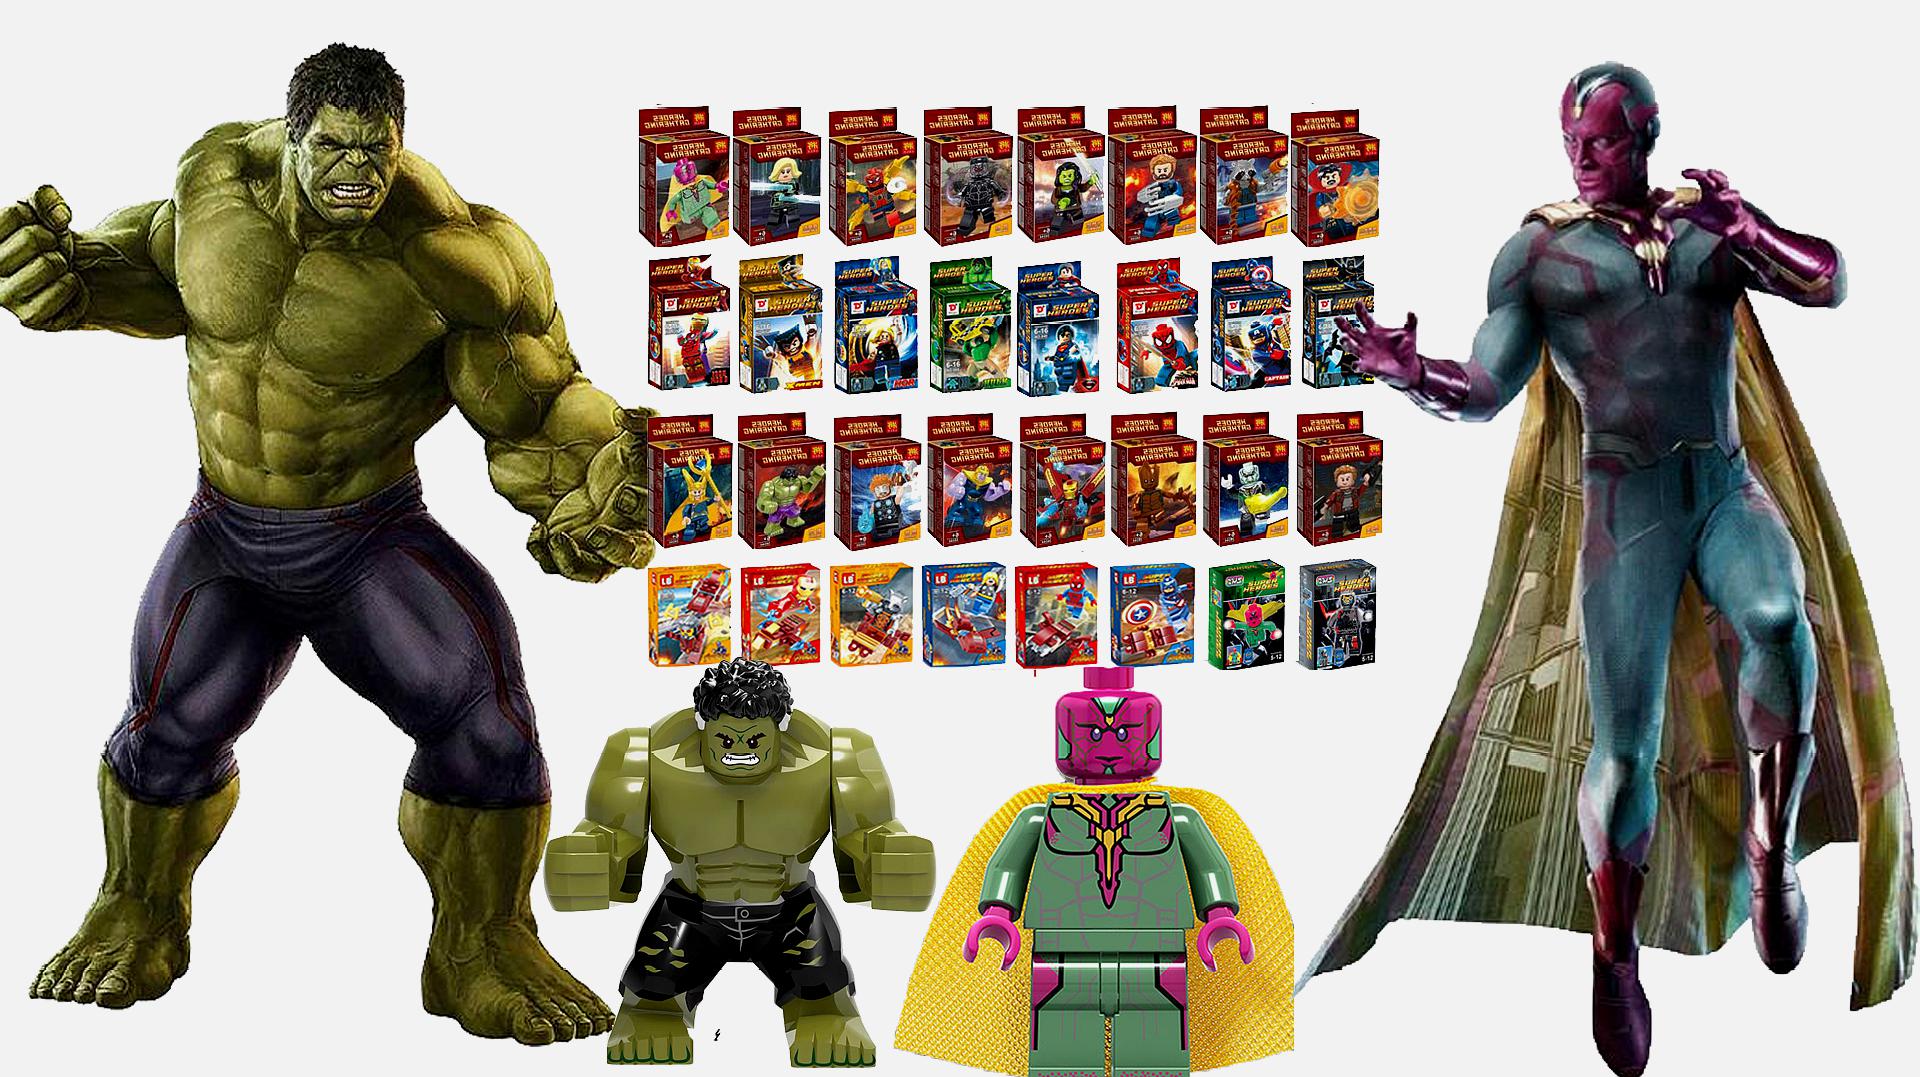 复仇者联盟3乐高积木玩具!拼装绿巨人浩克和幻视